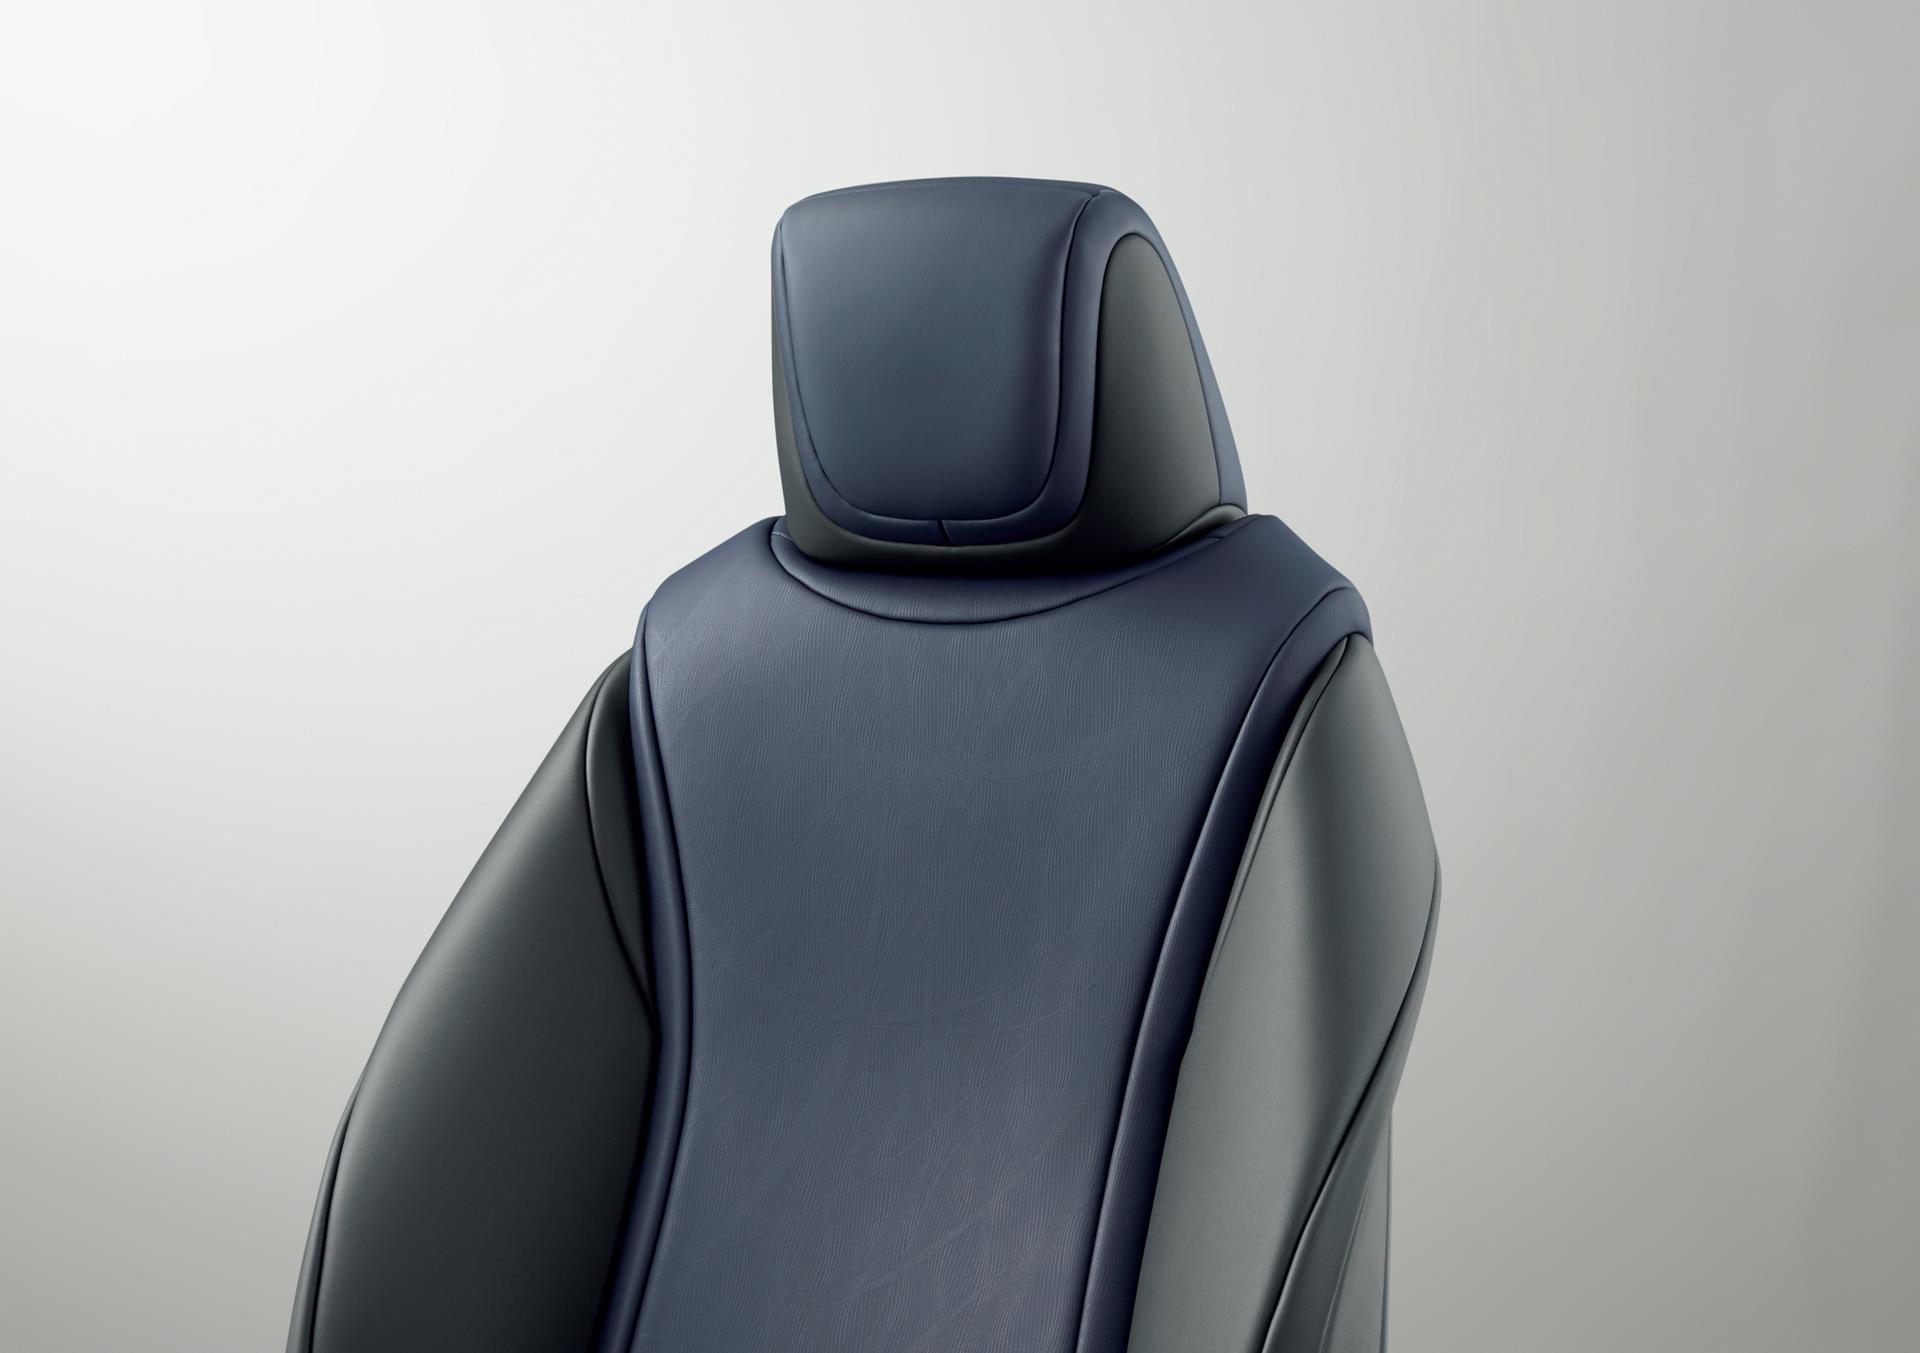 Toyota Mirai fuel cell sedan seat (Blue White)